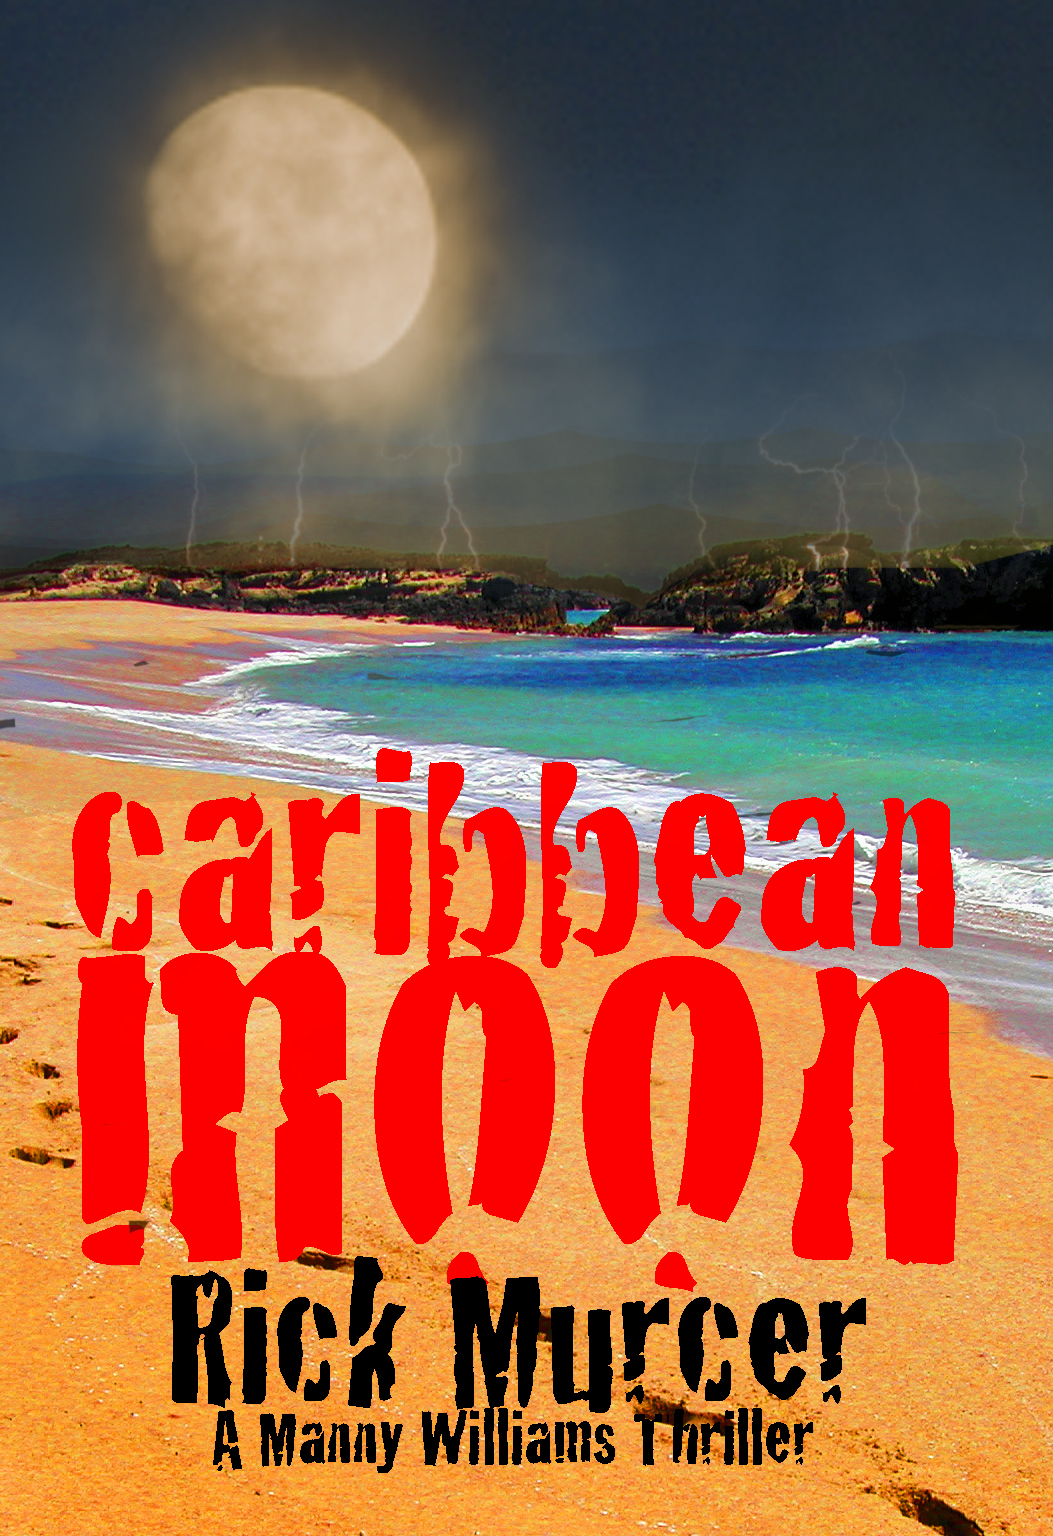 Caribbean Moon